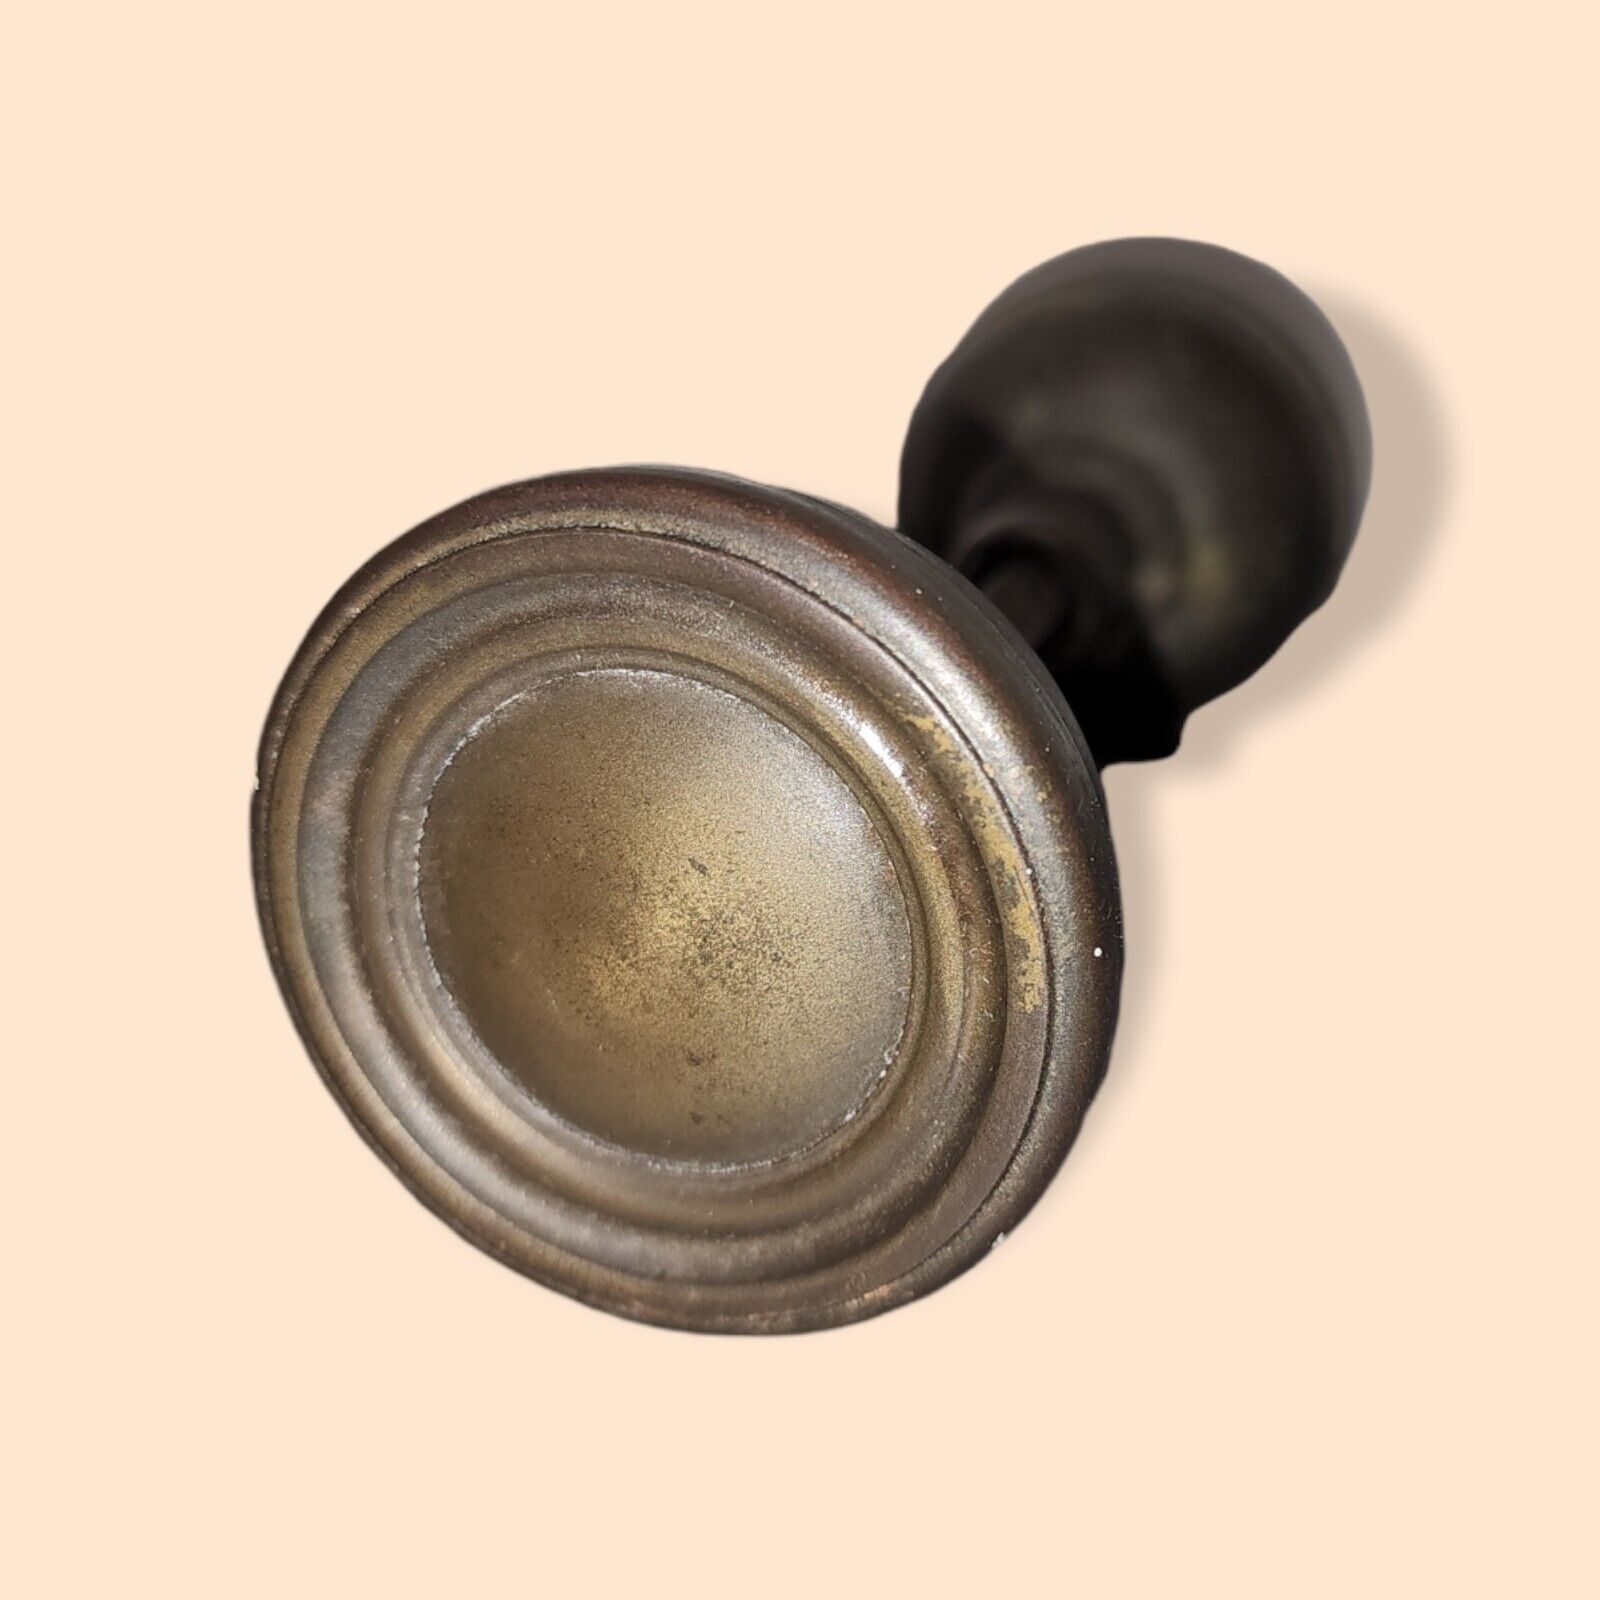 Antique Metal 2.25" Doorknob Circular Design Square Spindle